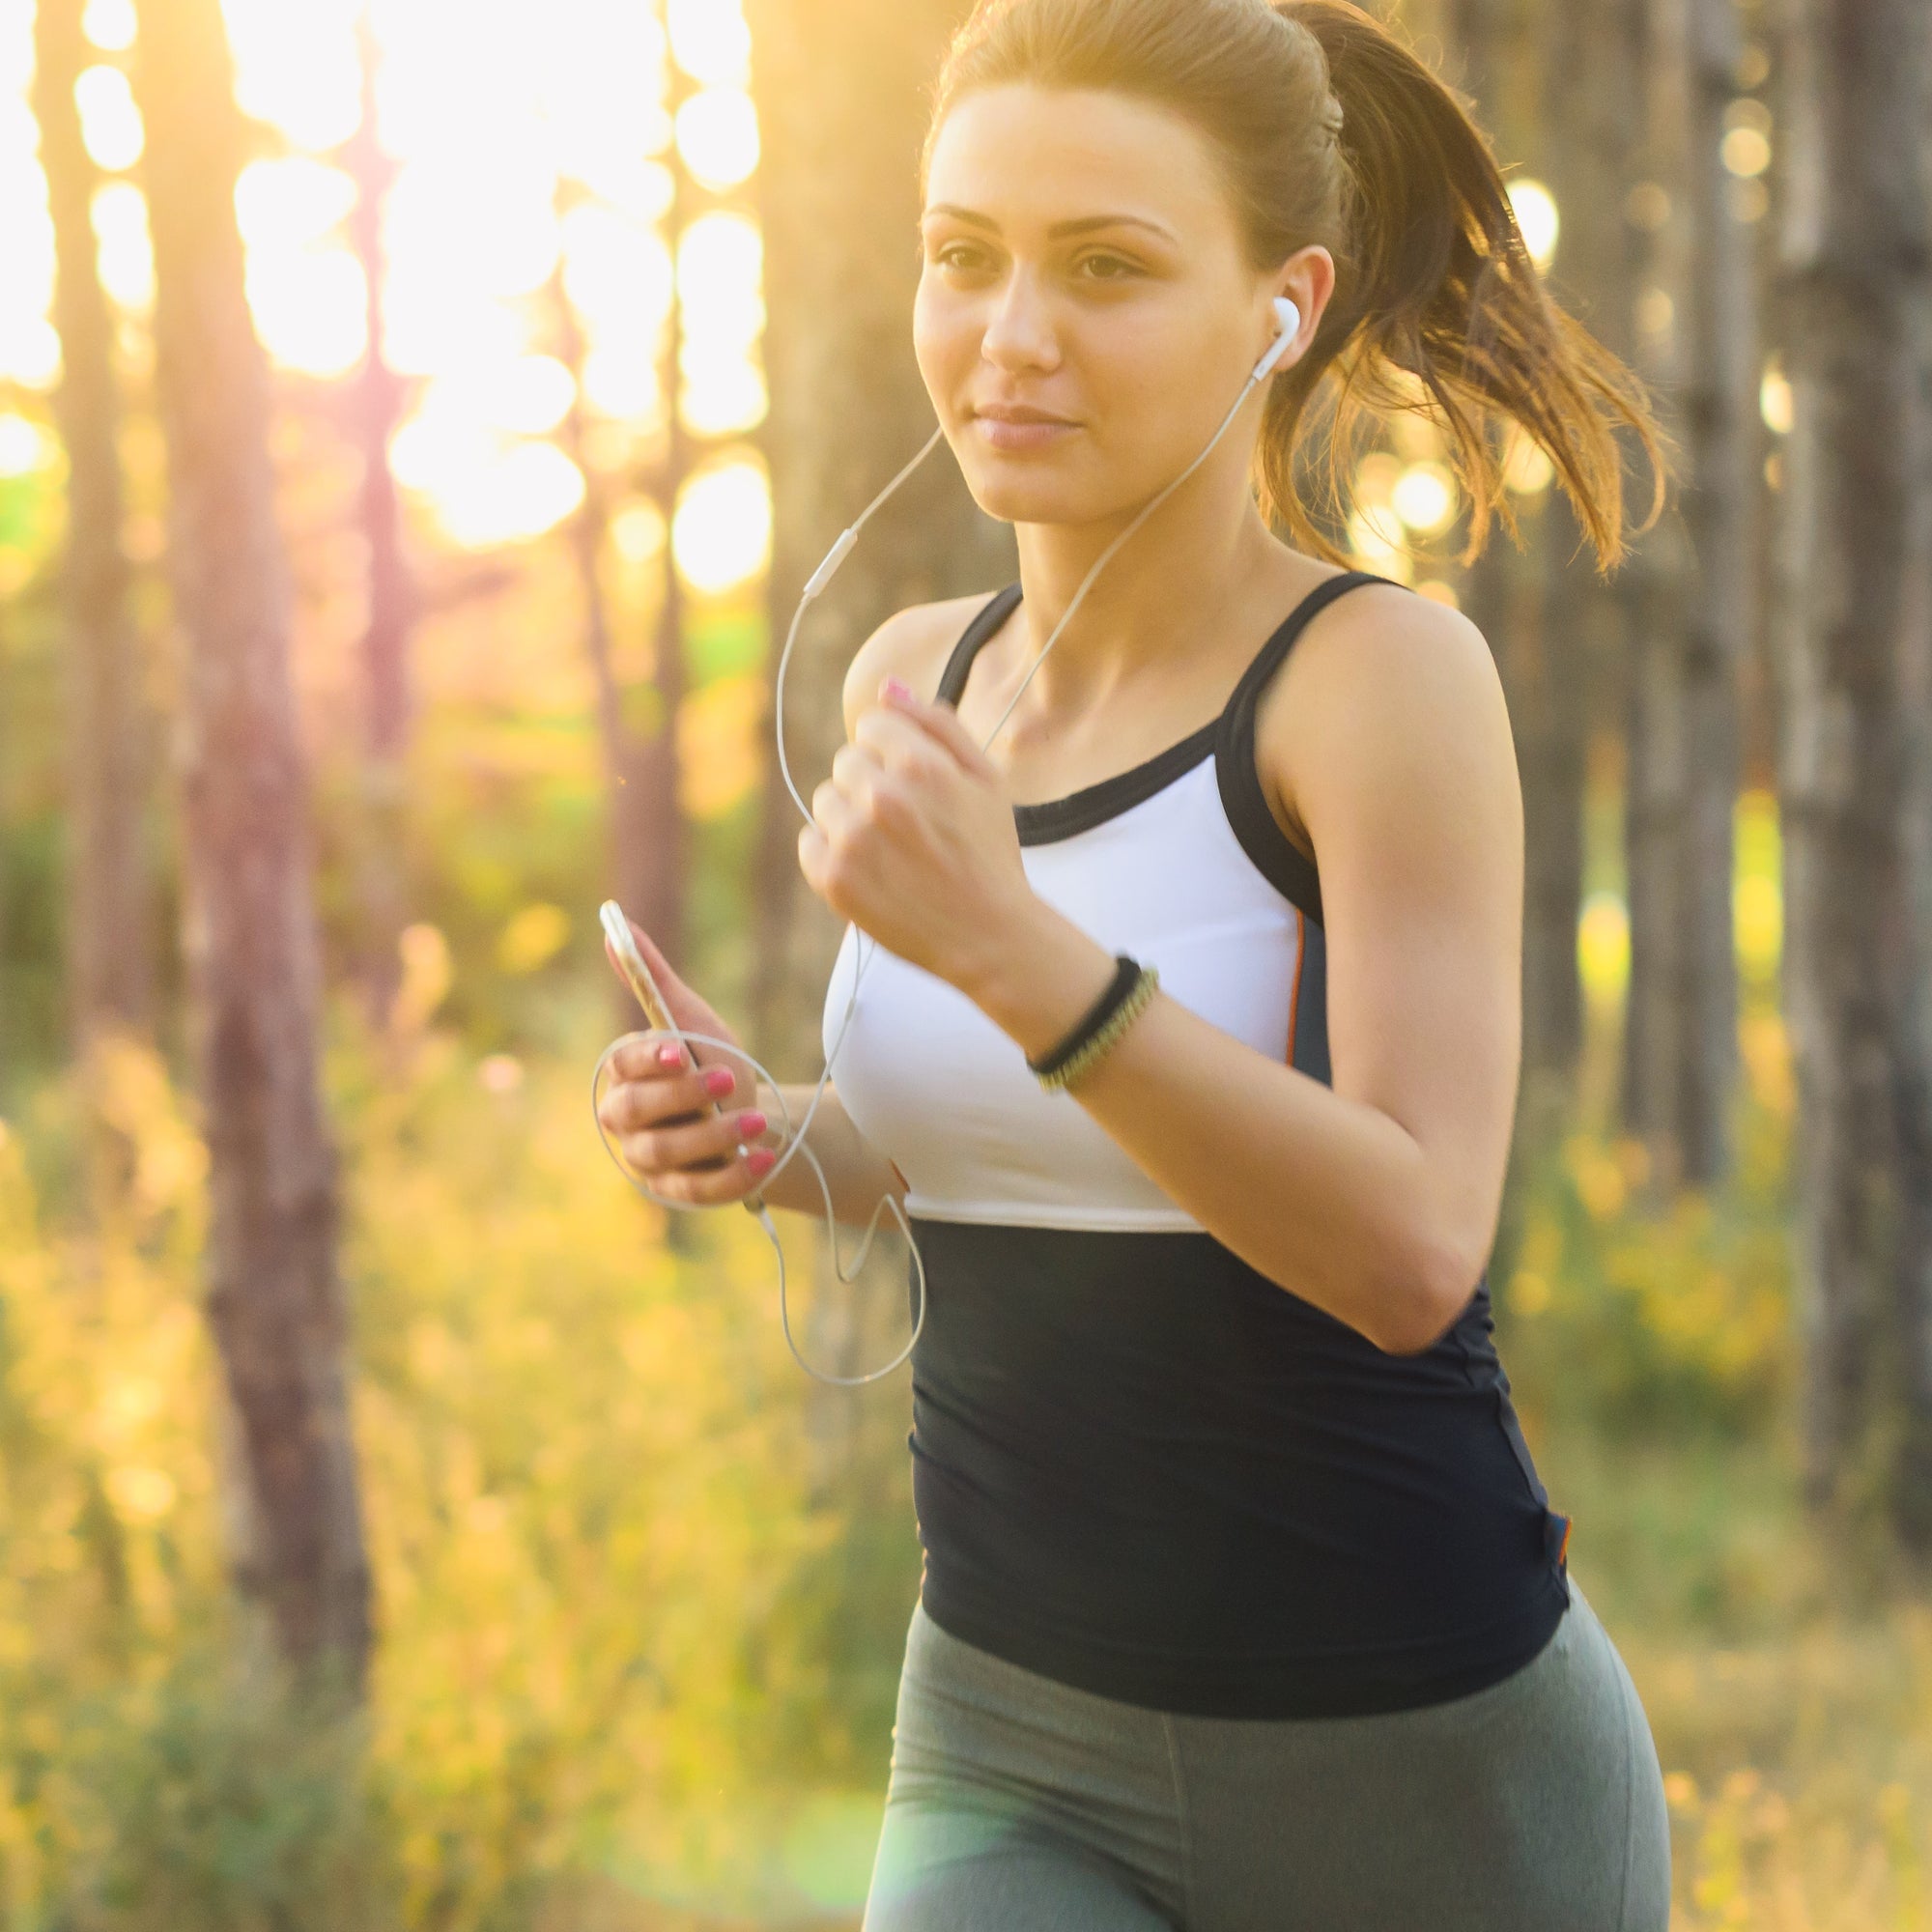 Mit Joggen und moderatem Laufen kann man den Bluthochdruck senken